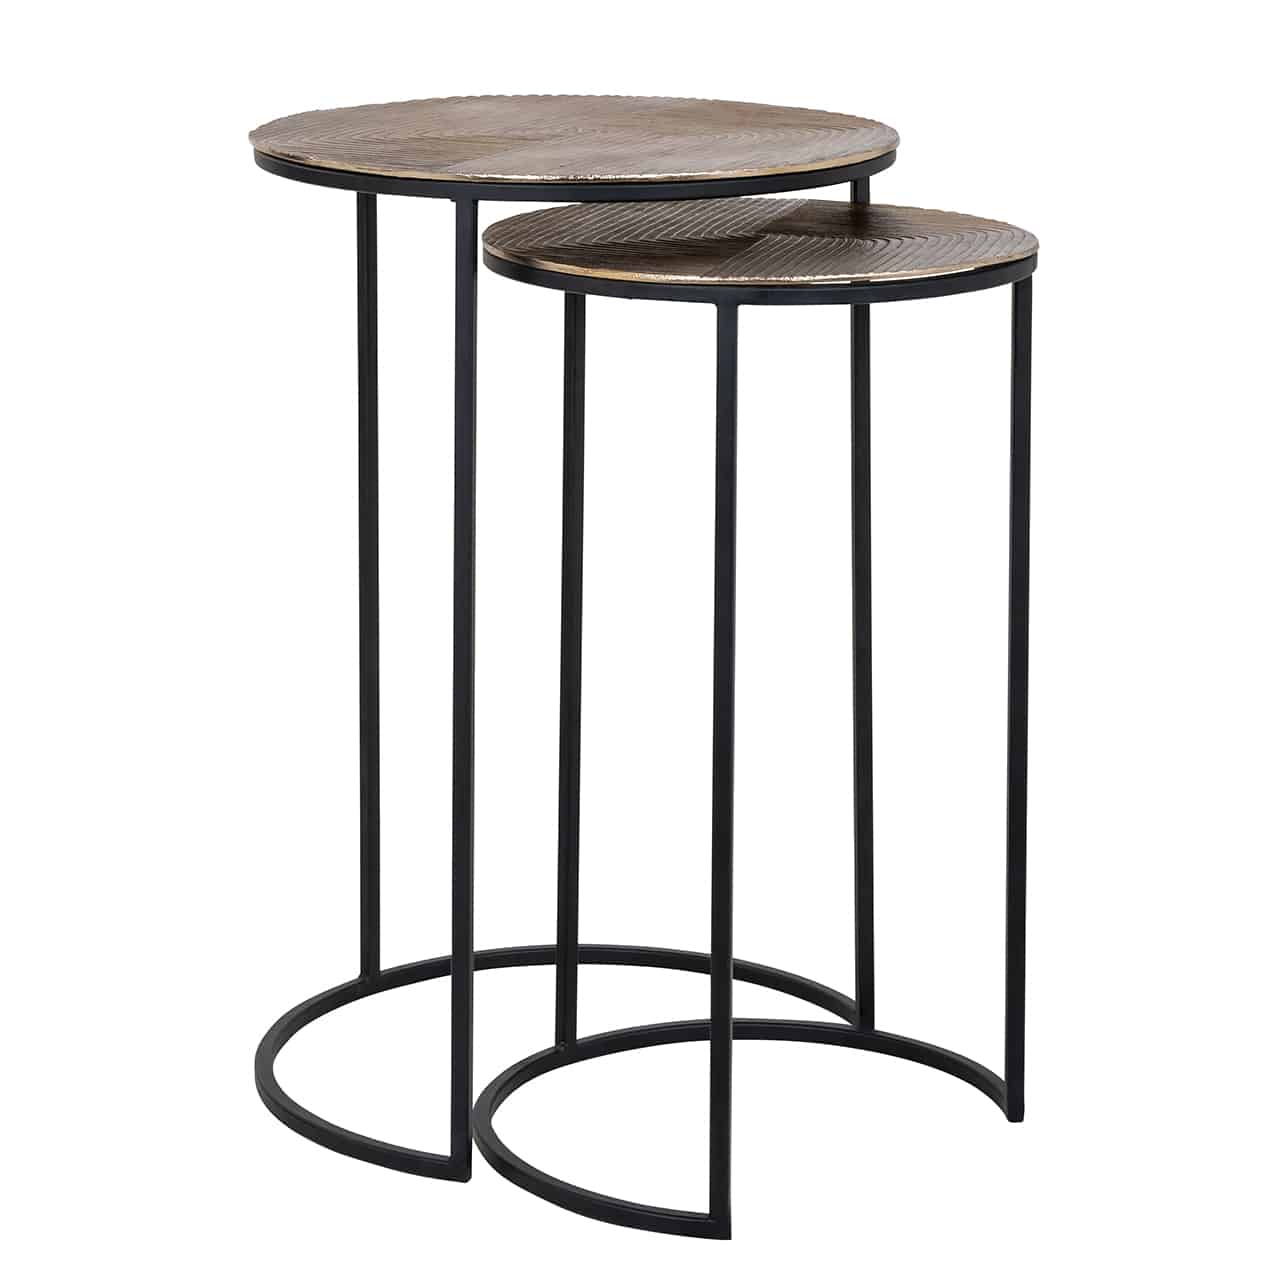 Lohan set of 2 tables-Renaissance Design Studio